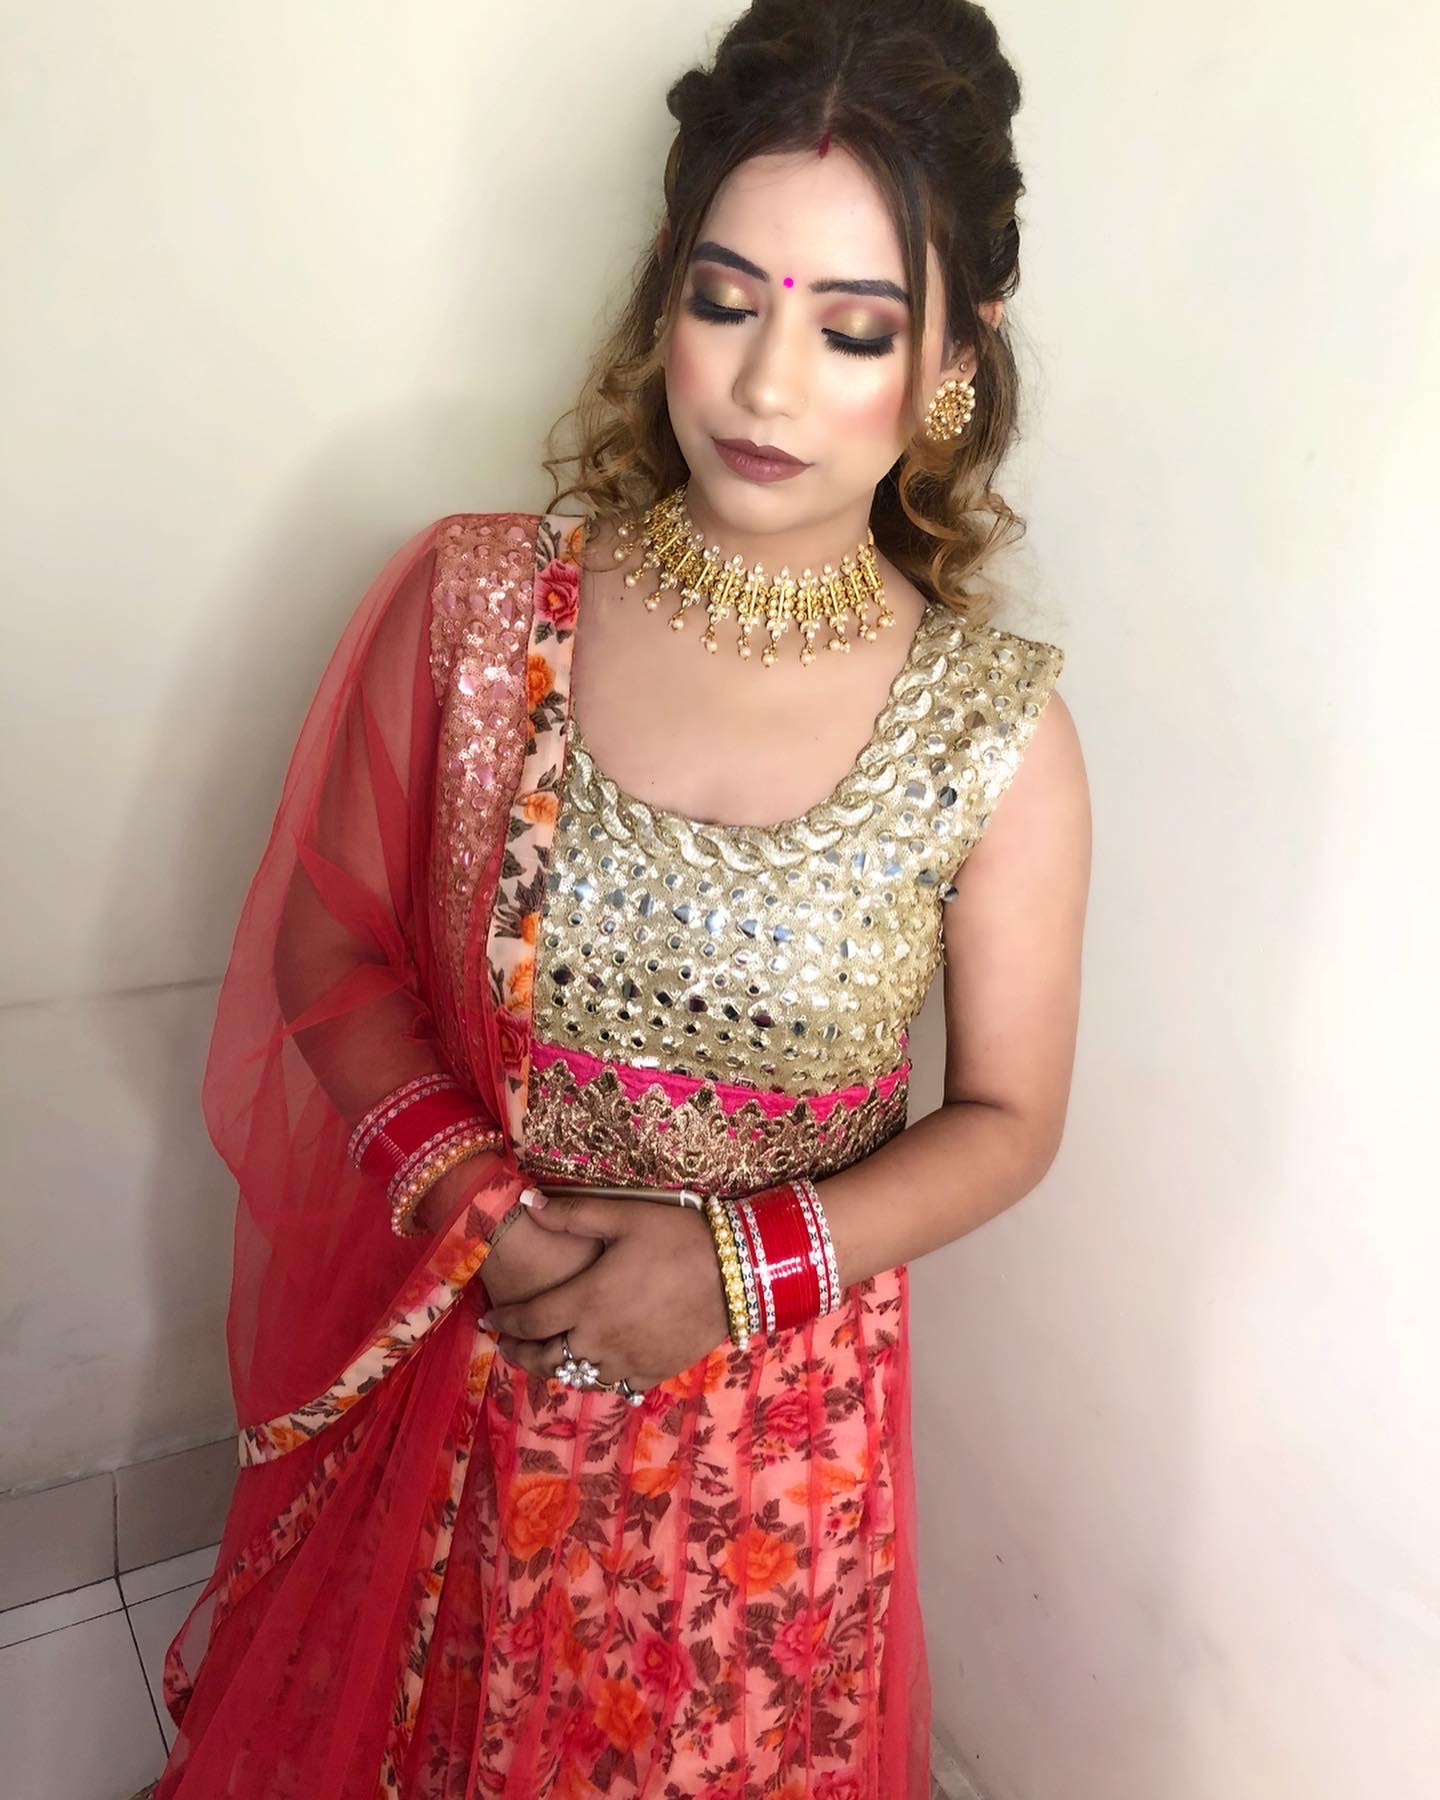 richa-rana-makeup-artist-delhi-ncr